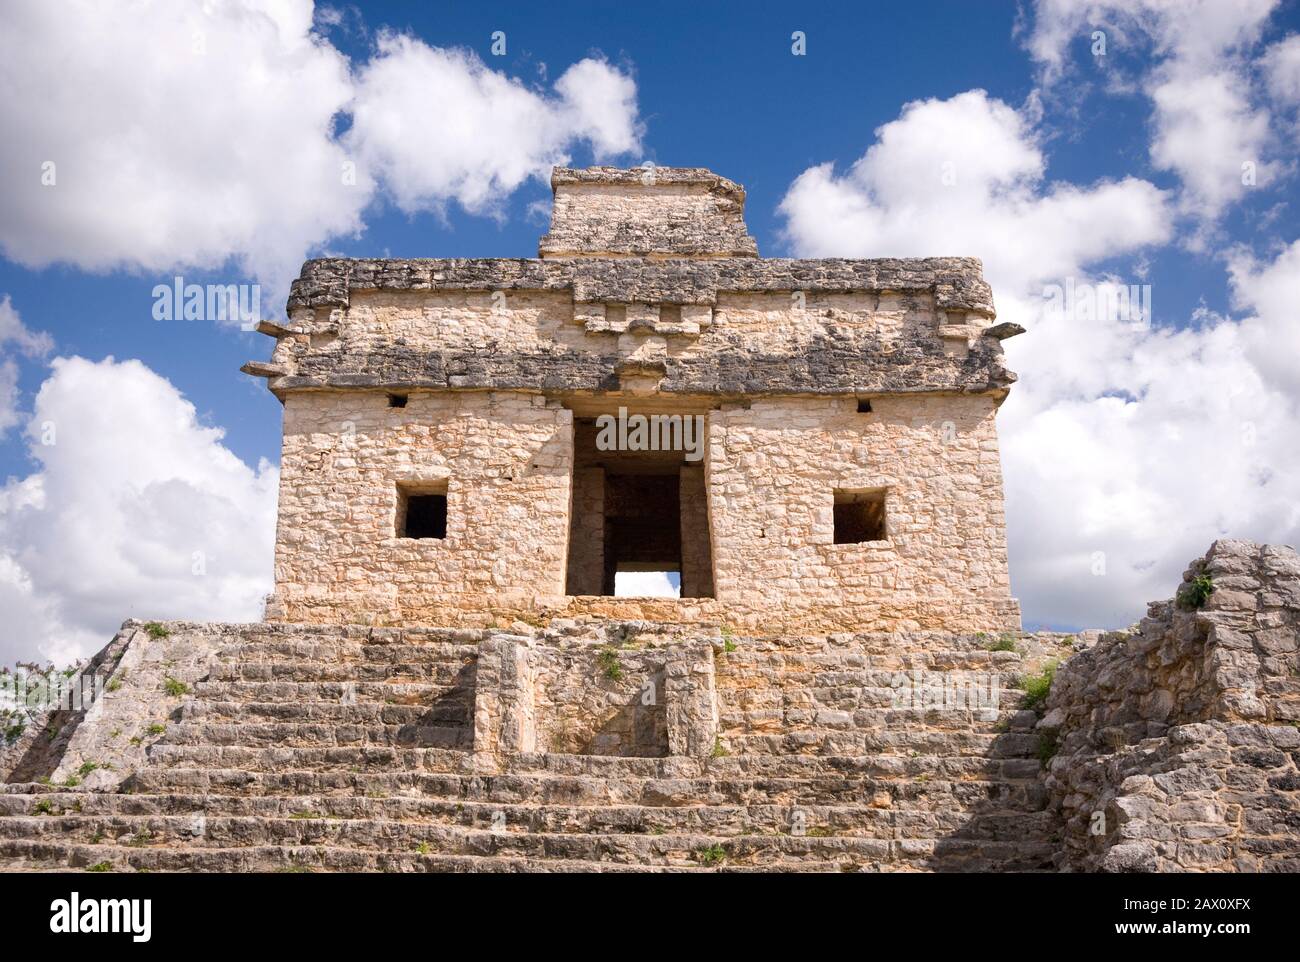 Messico - 16 GEN 2007: il tempio del sole o sette bambole da Sacbe 1 a Dzibilchaltún Maya sito archeologico vicino a Merida Foto Stock